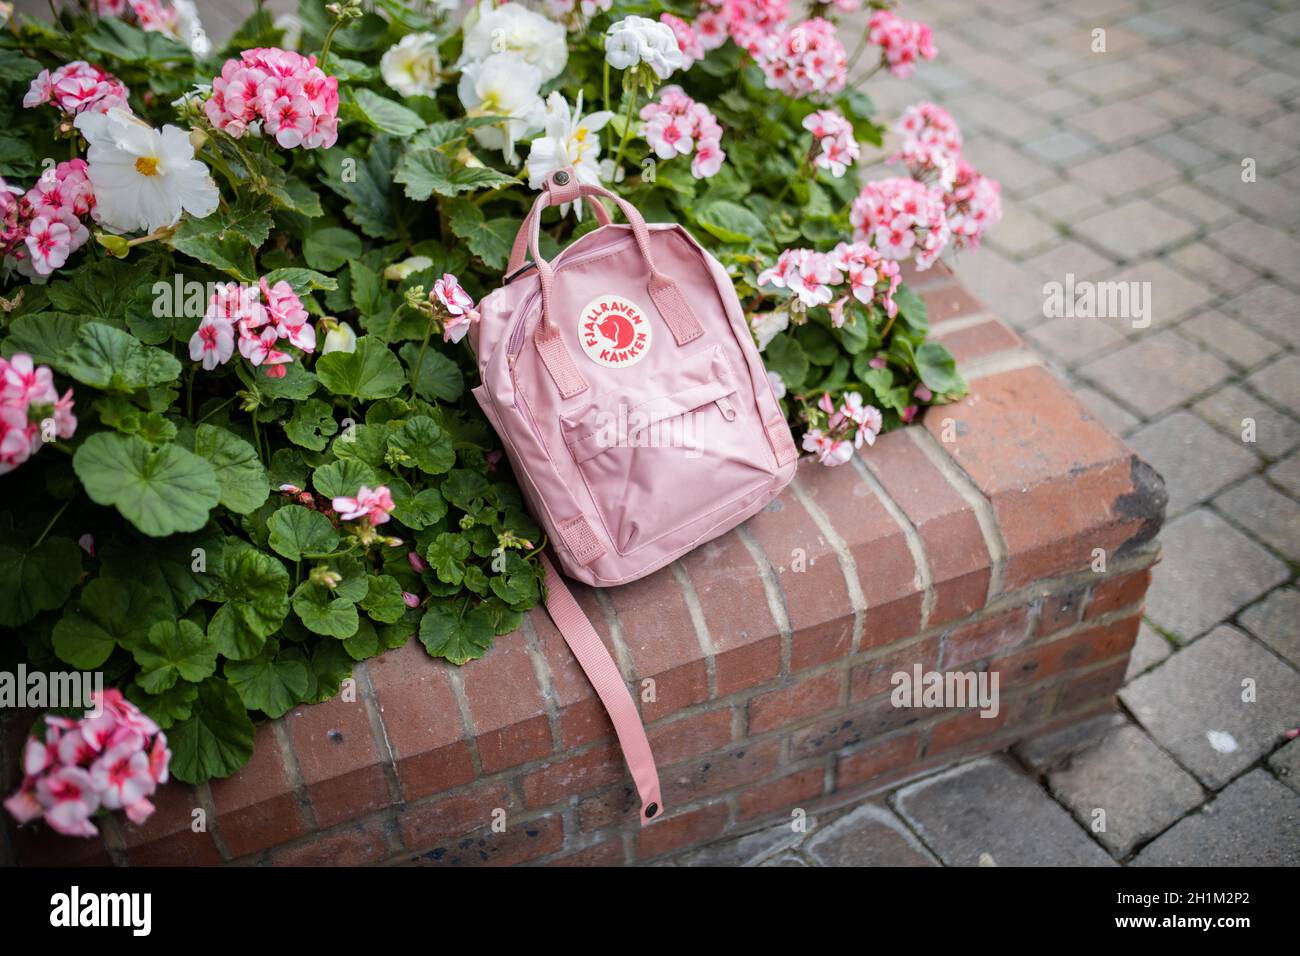 Londres, Royaume-Uni - 4 novembre 2020 : petit sac à dos Fjallraven rose sur jardinière en briques avec plantes et fleurs roses.Sac à dos rose et fleurs colorées sur bri Banque D'Images